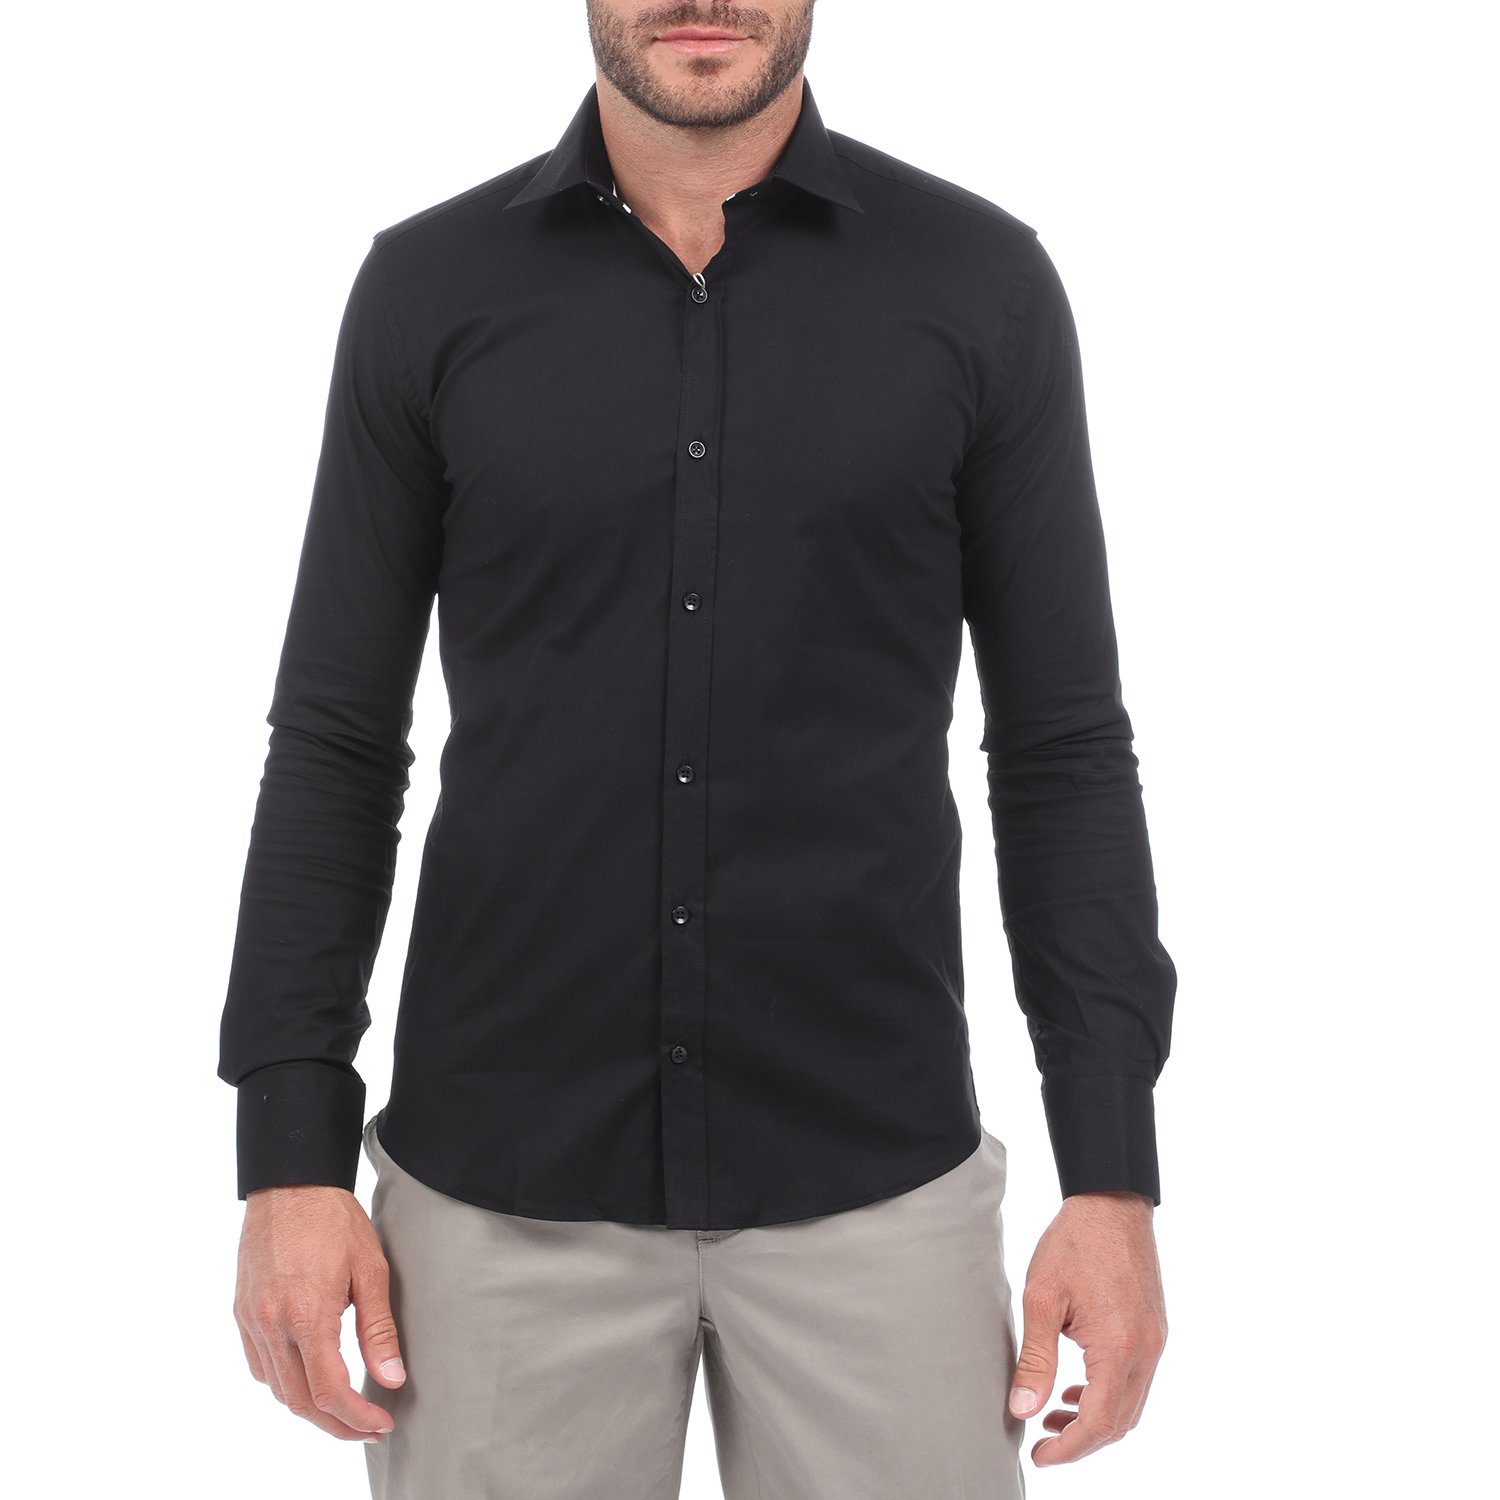 Ανδρικά/Ρούχα/Πουκάμισα/Μακρυμάνικα MARTIN & CO - Ανδρικό πουκάμισο MARTIN & CO SLIM FIT μαύρο